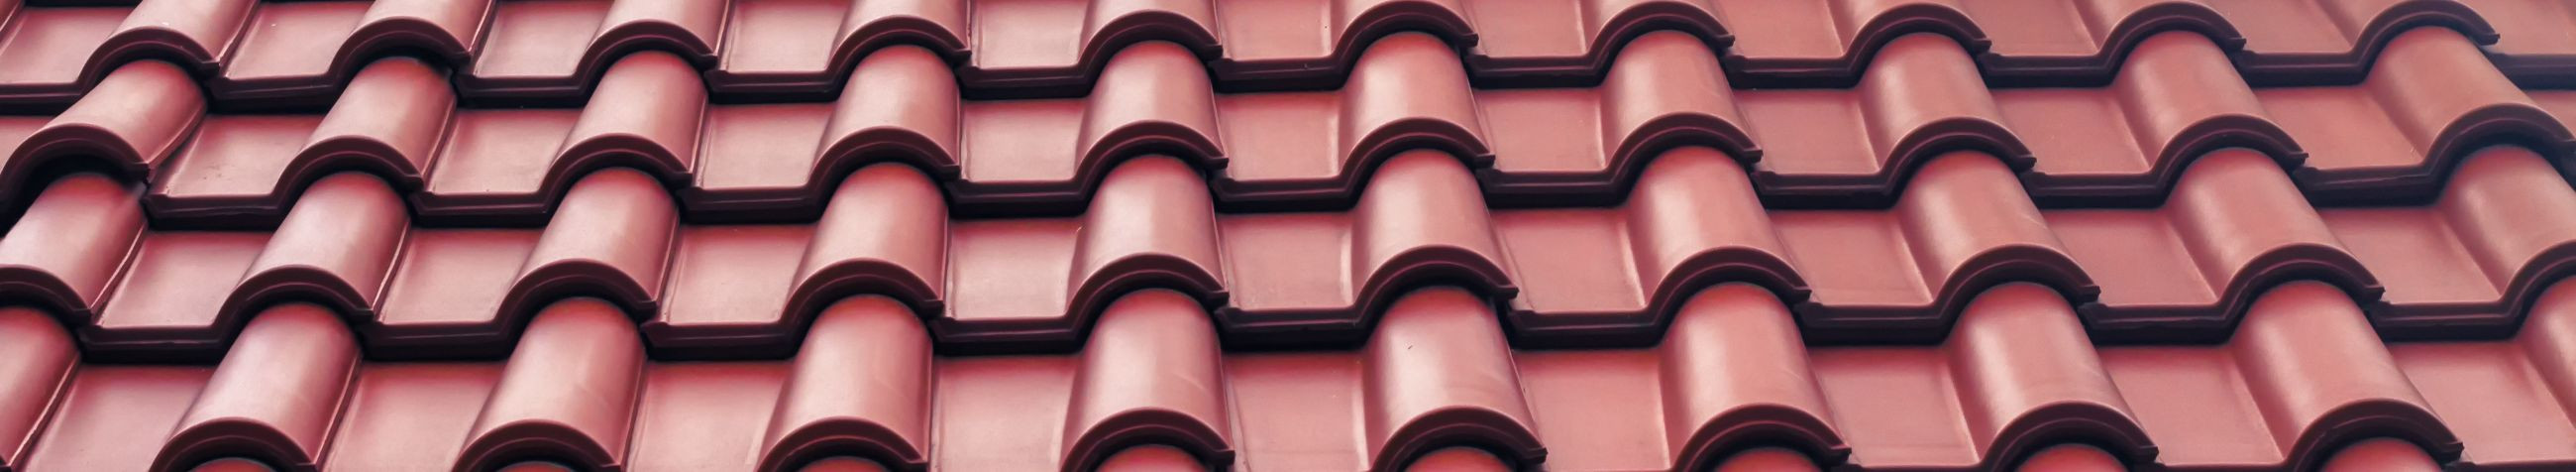 Paneme sinu maja katuse taas särama. Telli katuste korrashoid Eesti kõige kogenumatelt ekspertidelt. Katuste hooldus, värvimine ja puhastus üle Eesti.